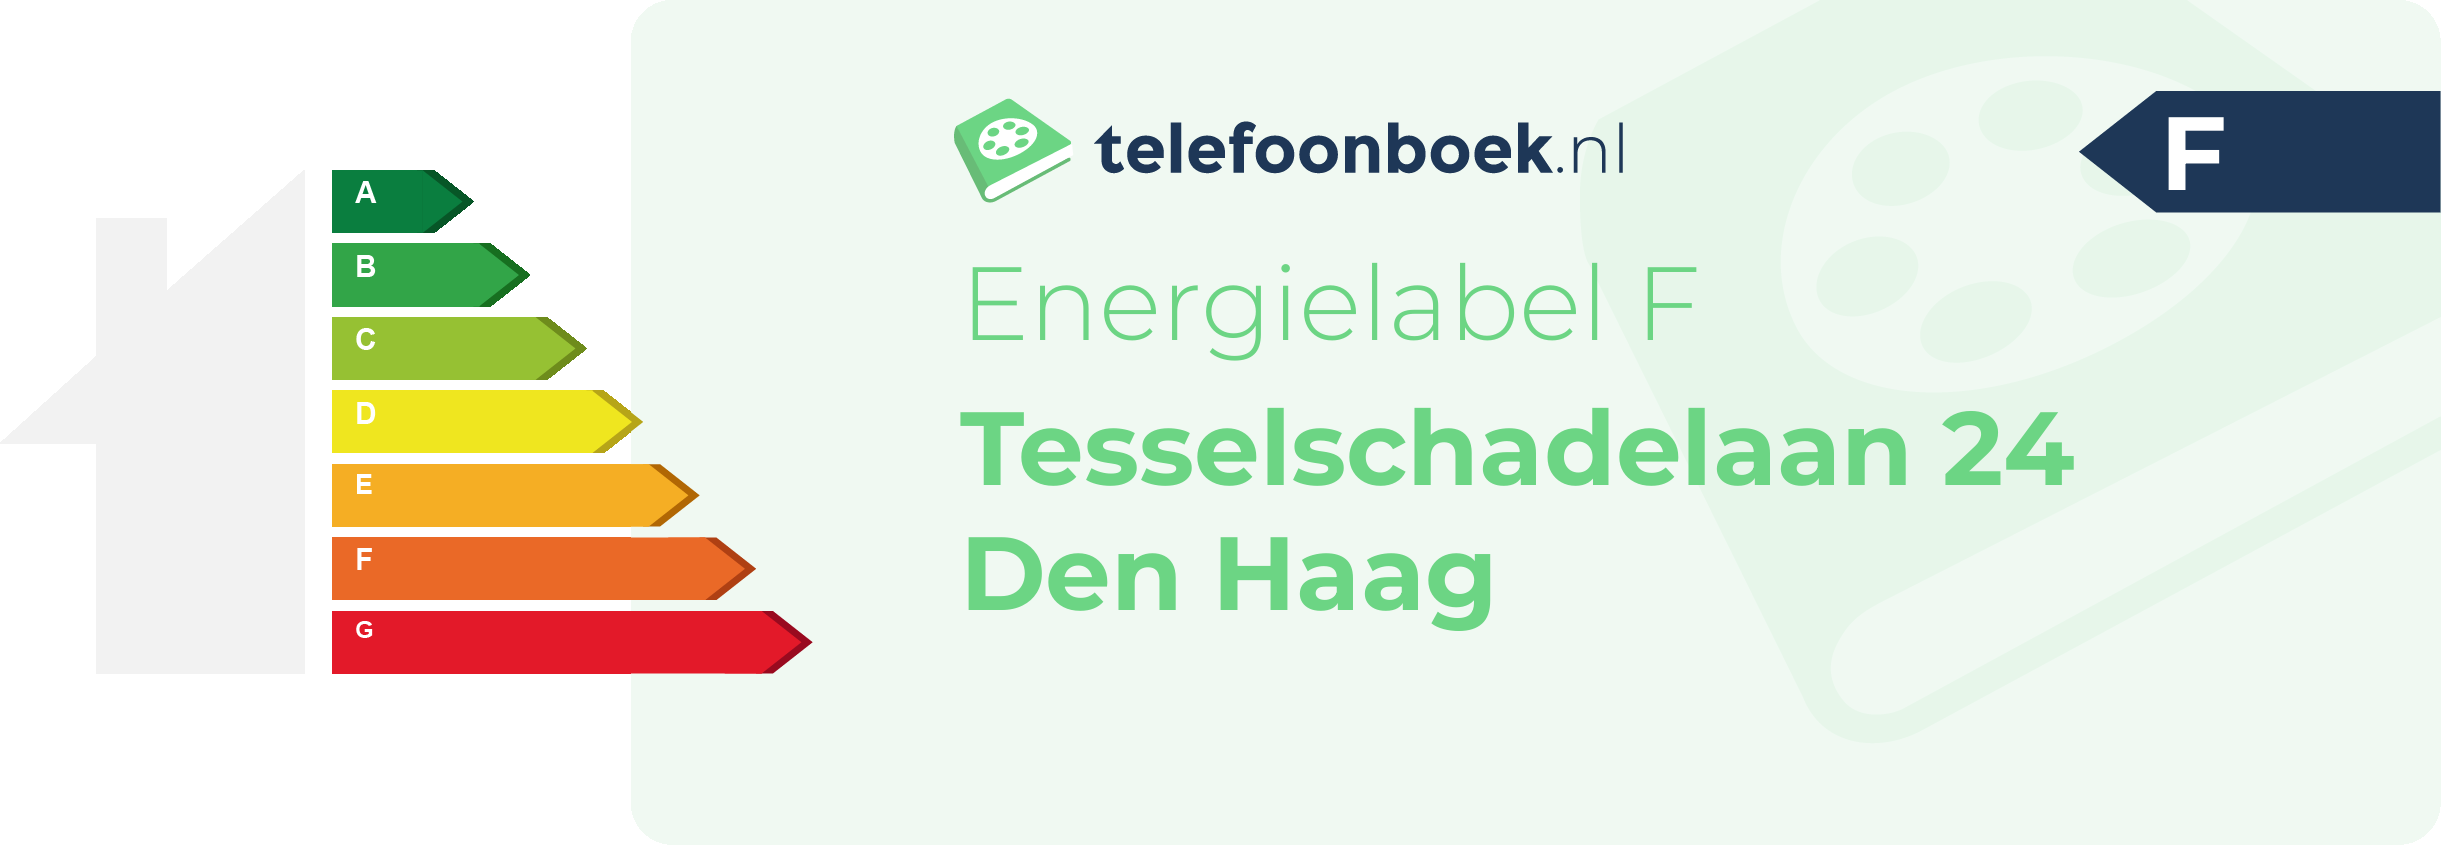 Energielabel Tesselschadelaan 24 Den Haag